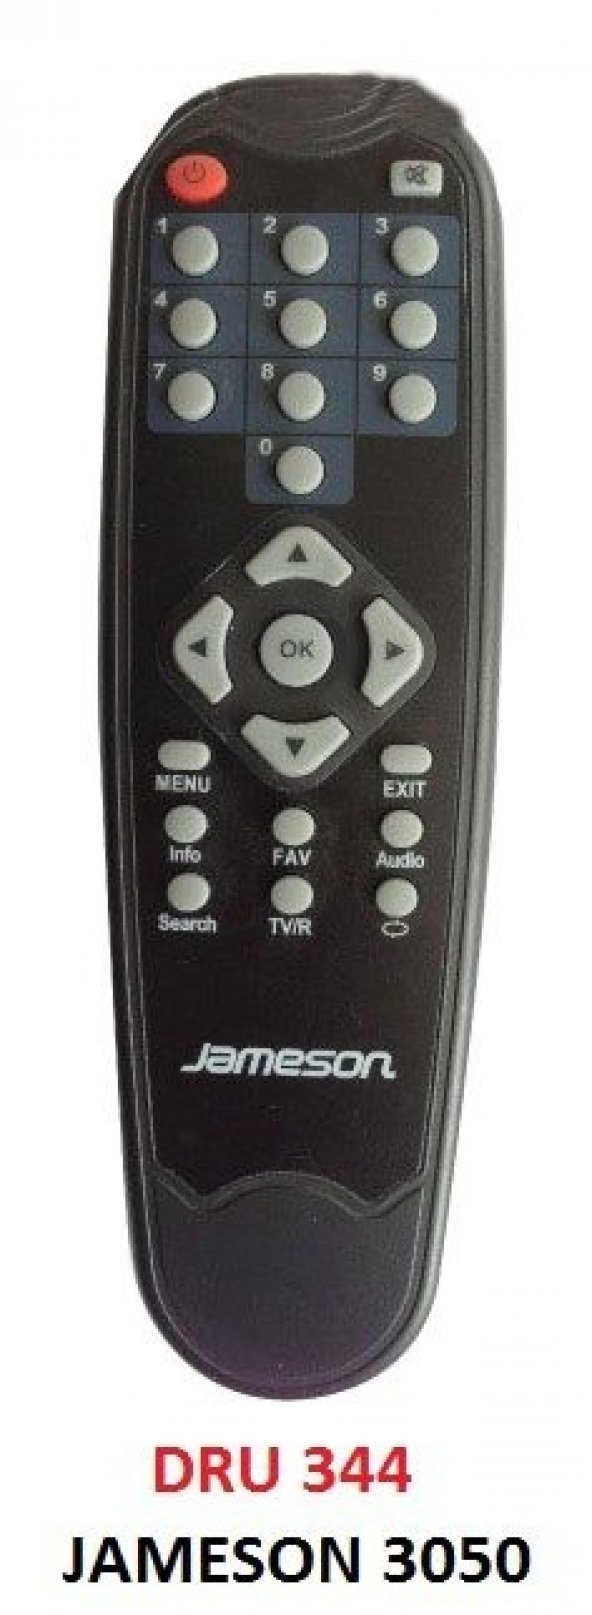 Jameson 3050 Uydu Kumandası